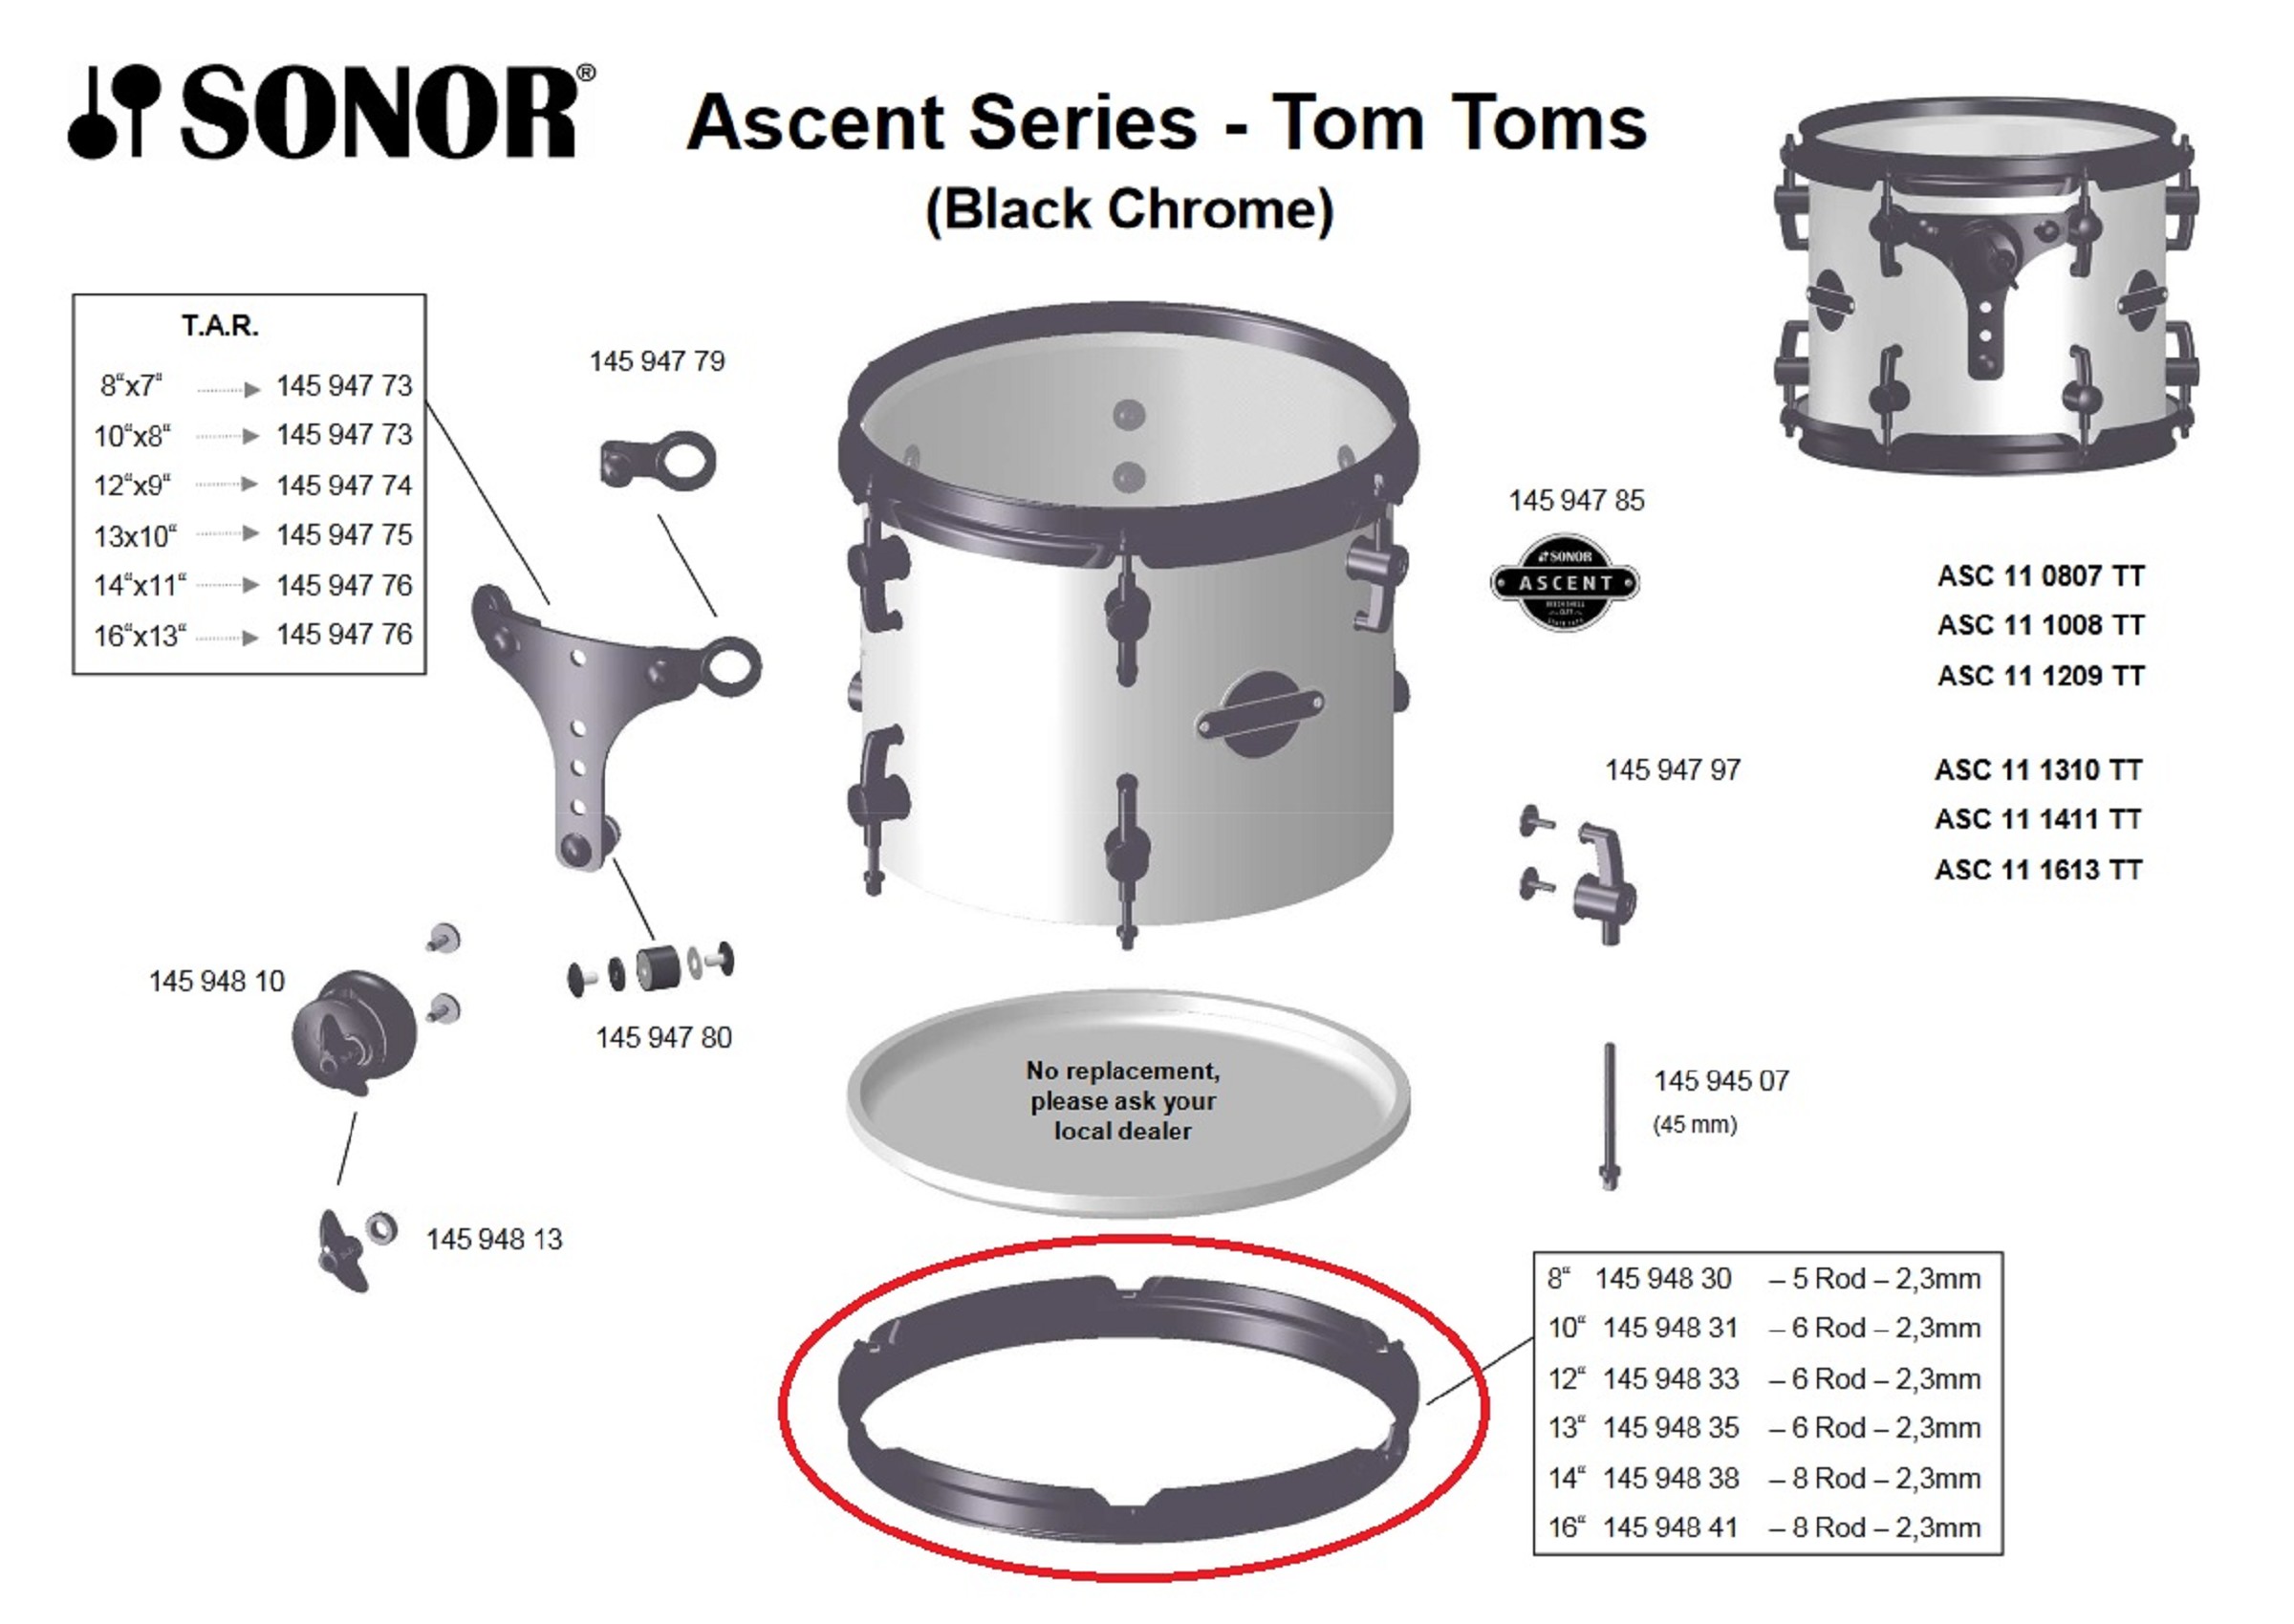 Sonor Parts Spannreifen 8" 5loch 2,3mm black chrom power hoop (ASC)